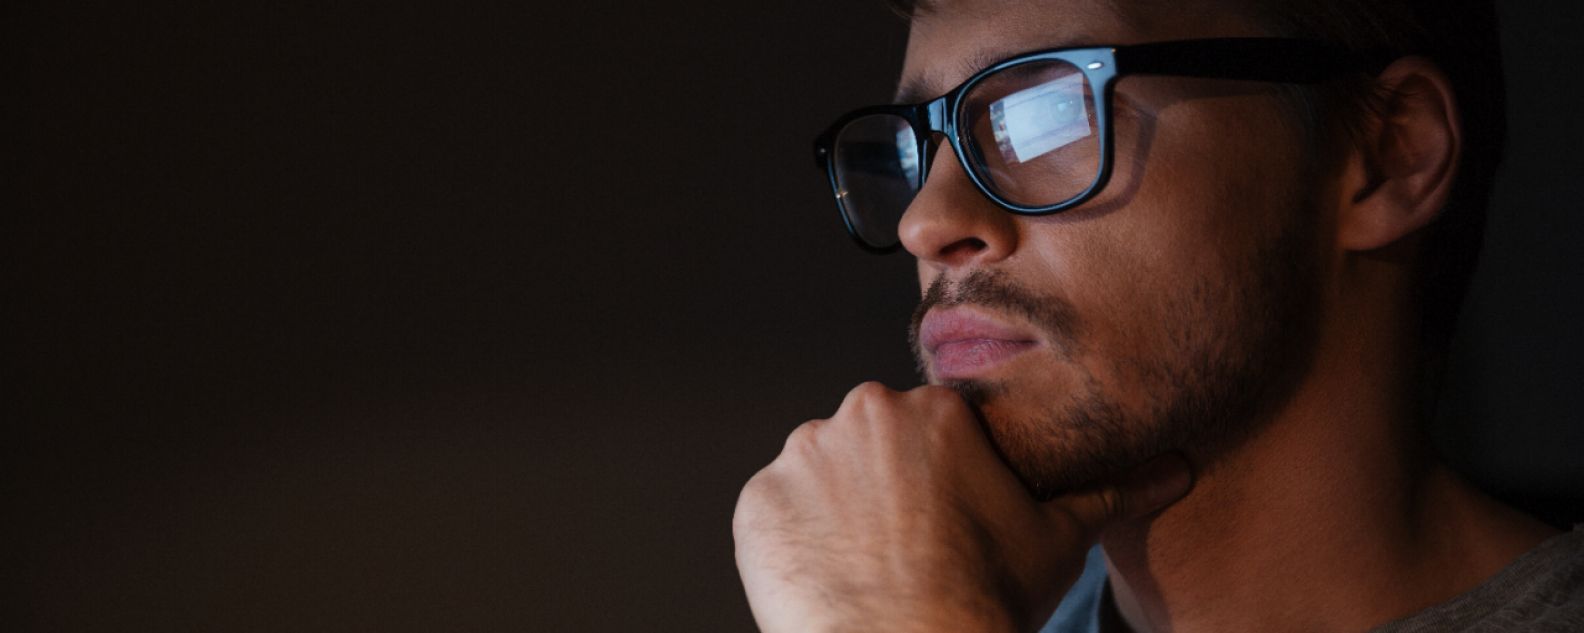 Primo piano di un uomo pensieroso il cui schermo del computer si riflette sulle lenti degli occhiali